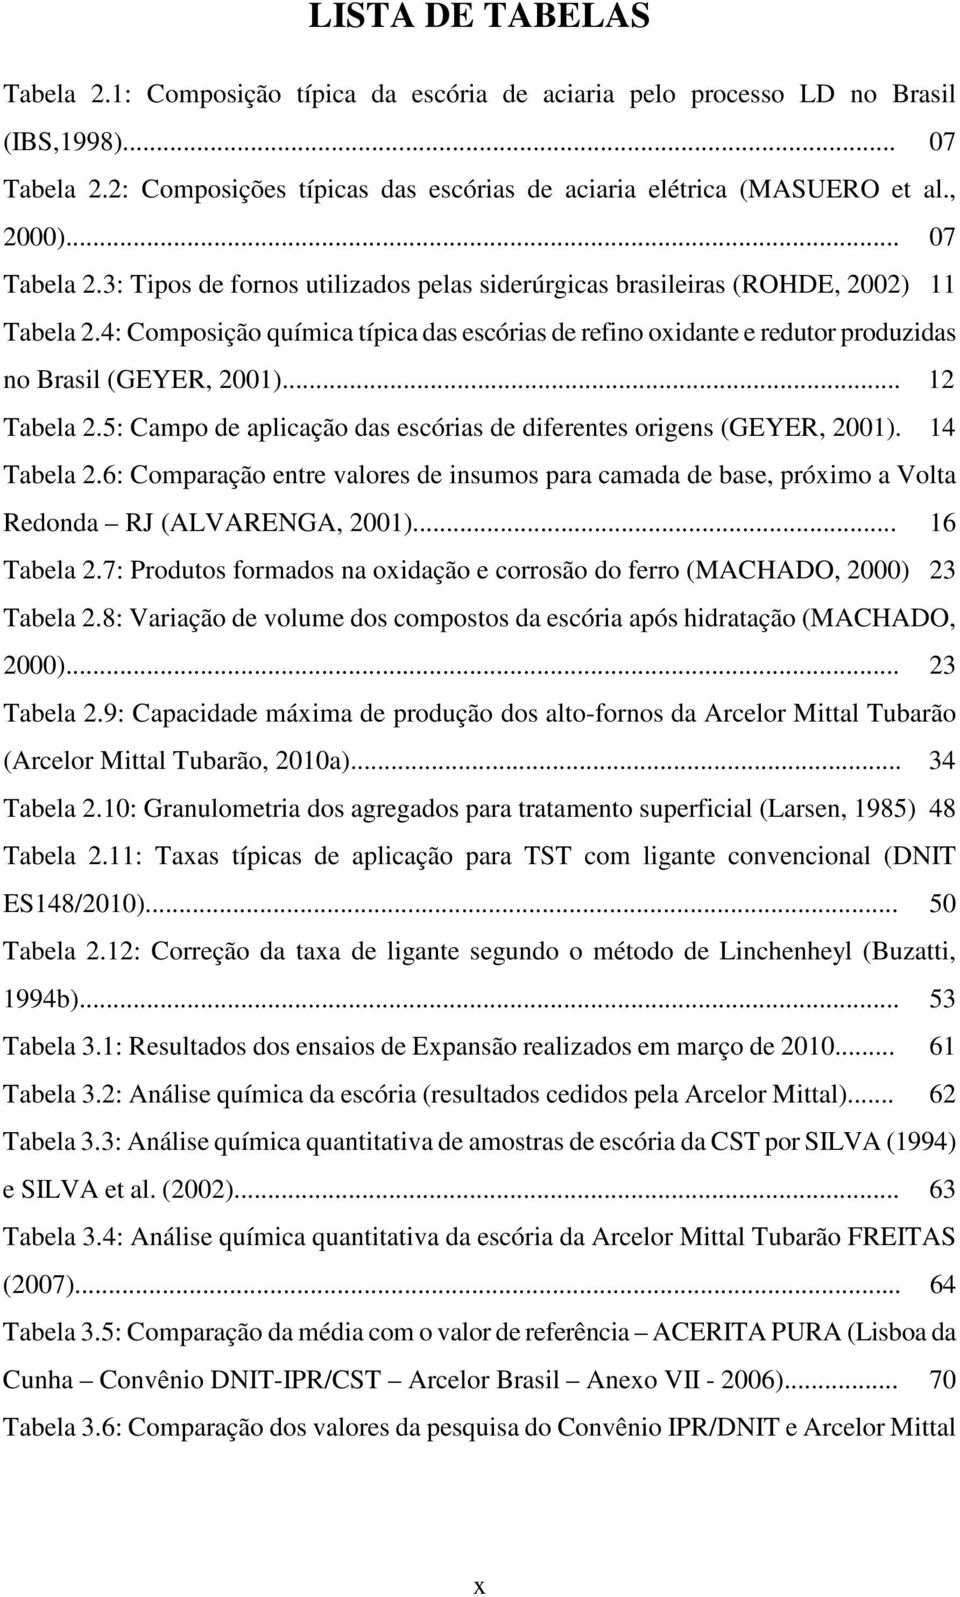 4: Composição química típica das escórias de refino oxidante e redutor produzidas no Brasil (GEYER, 2001)... 12 Tabela 2.5: Campo de aplicação das escórias de diferentes origens (GEYER, 2001).